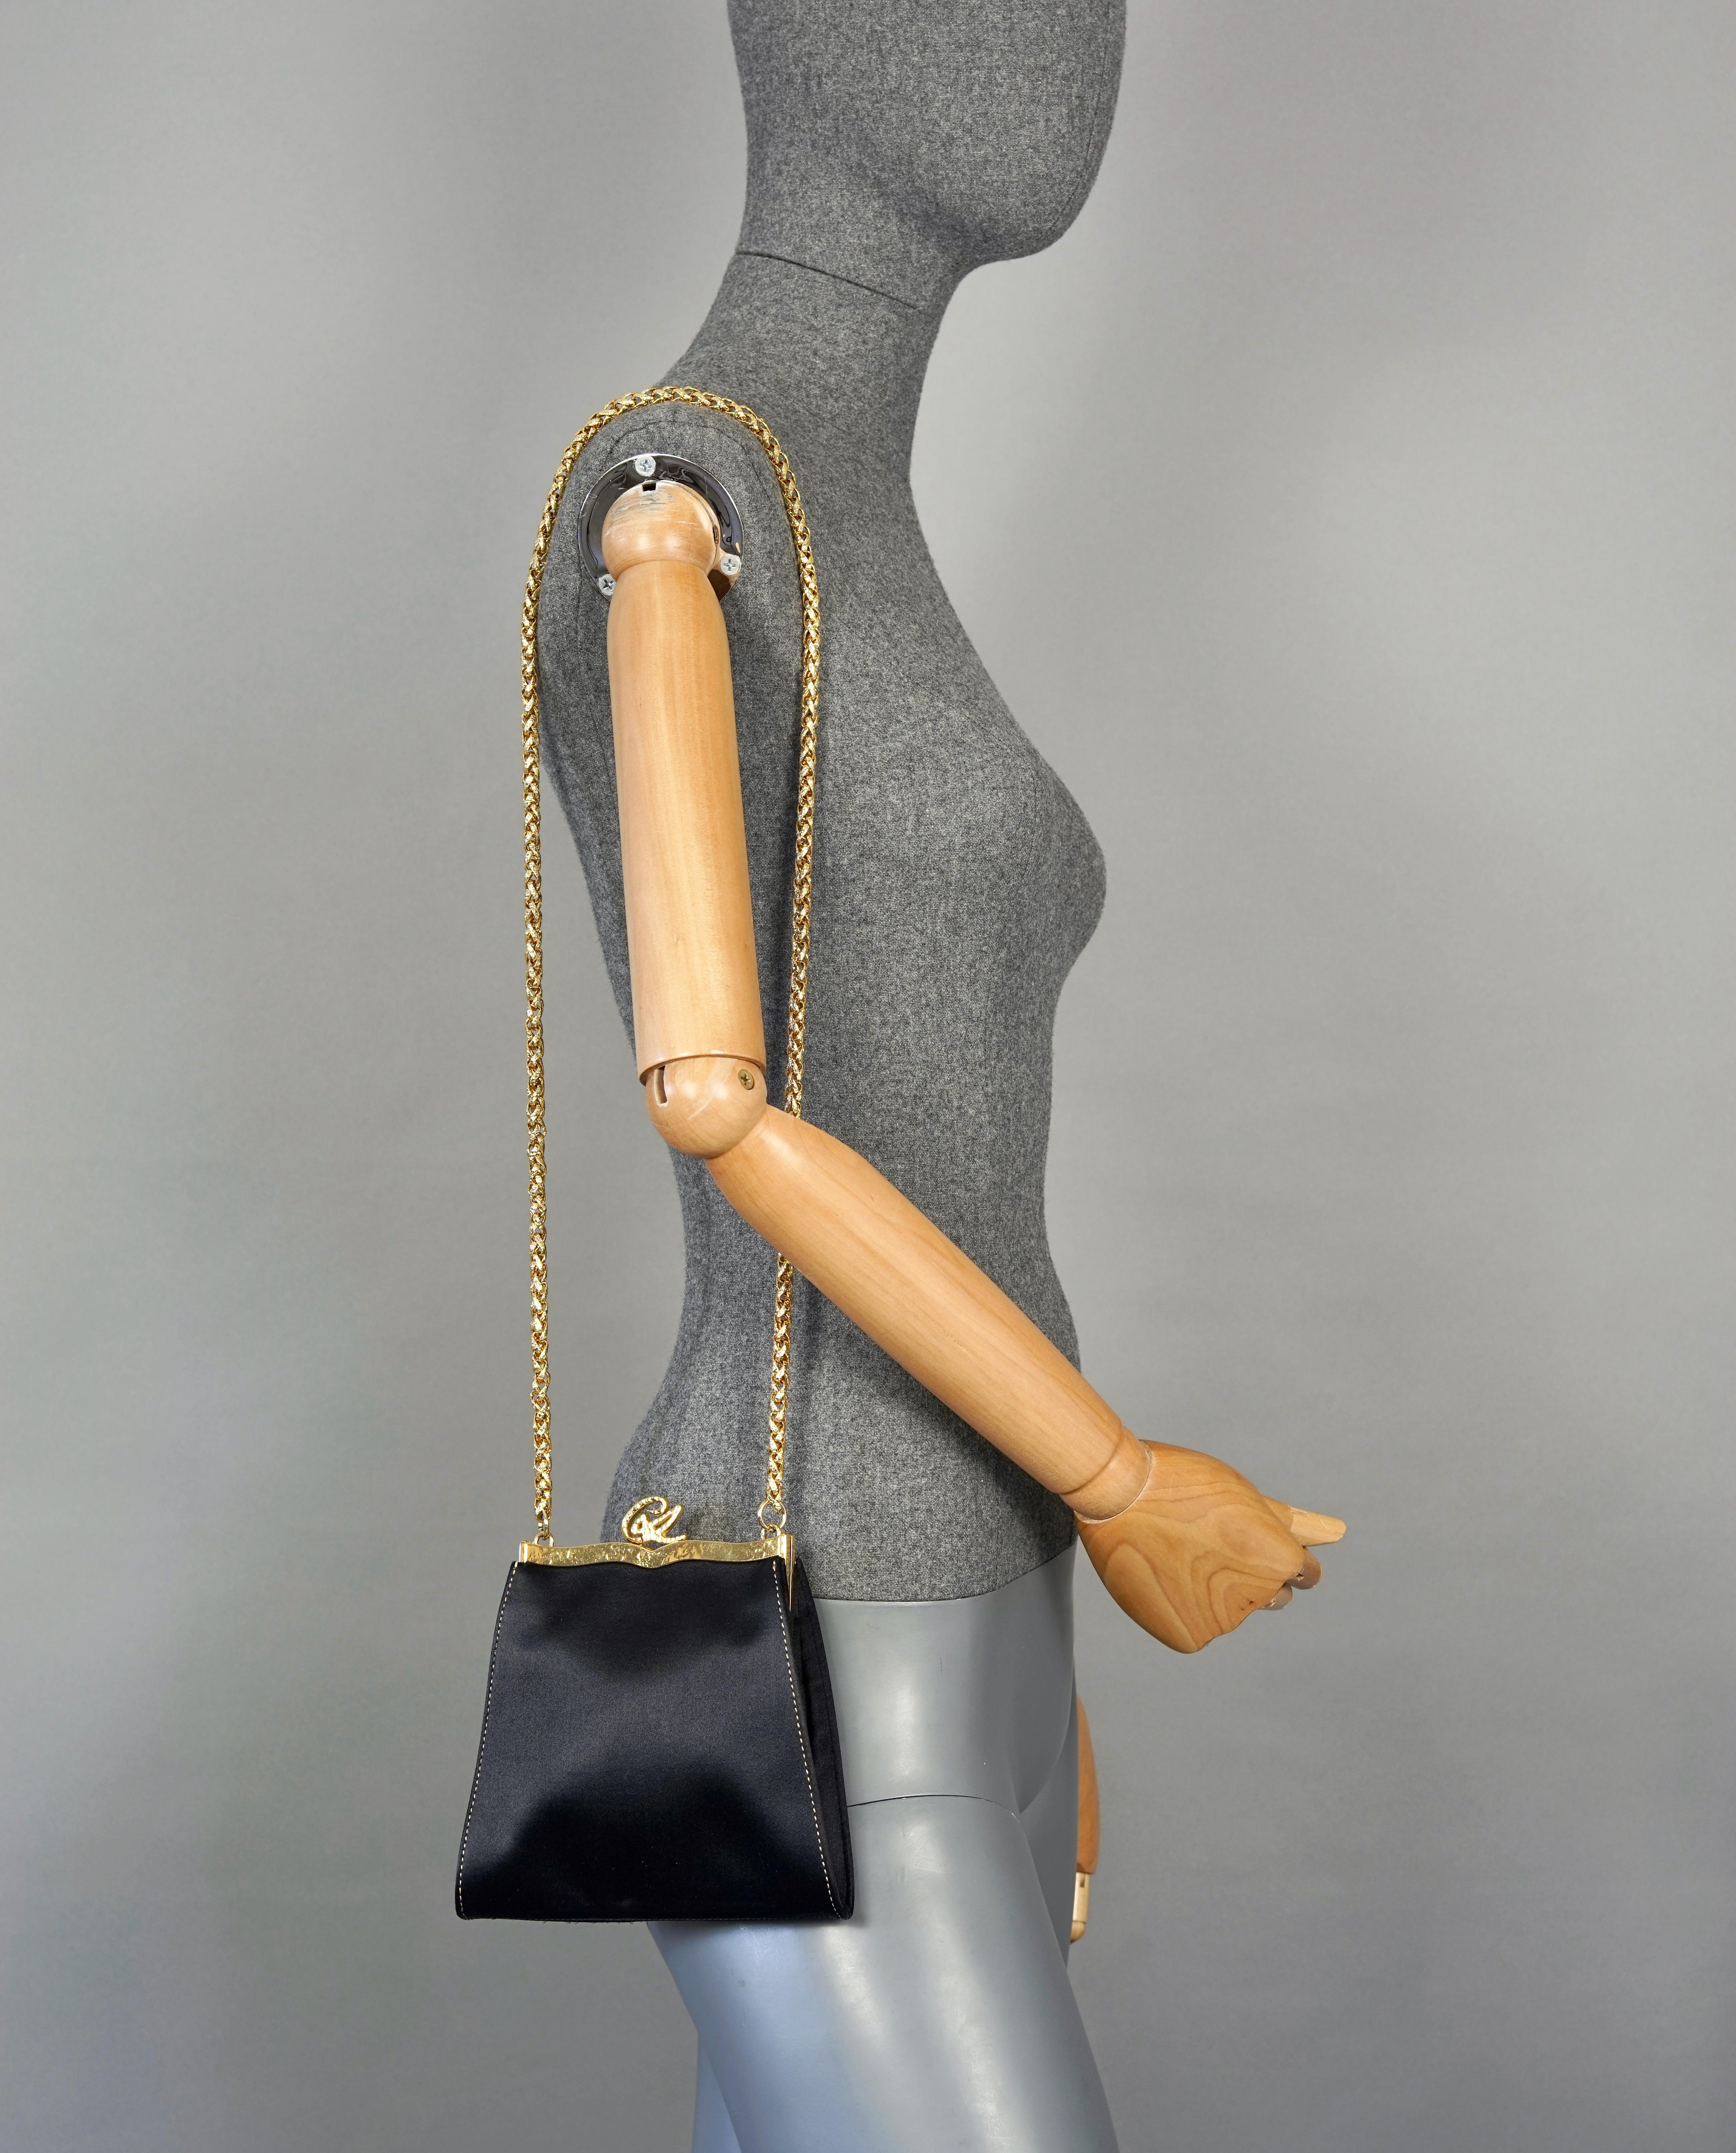 Vintage CHRISTIAN LACROIX Logo Black Satin Chain Shoulder Bag

Measurements:
Height: 6.69 inches (17 cm) 
Width: 6.29 inches (16 cm)
Depth: 0.78 inch (2 cm)
Top Handle: 38.58 inches (98 cm)

Features:
- 100% Authentic CHRISTIAN LACROIX.
- Black